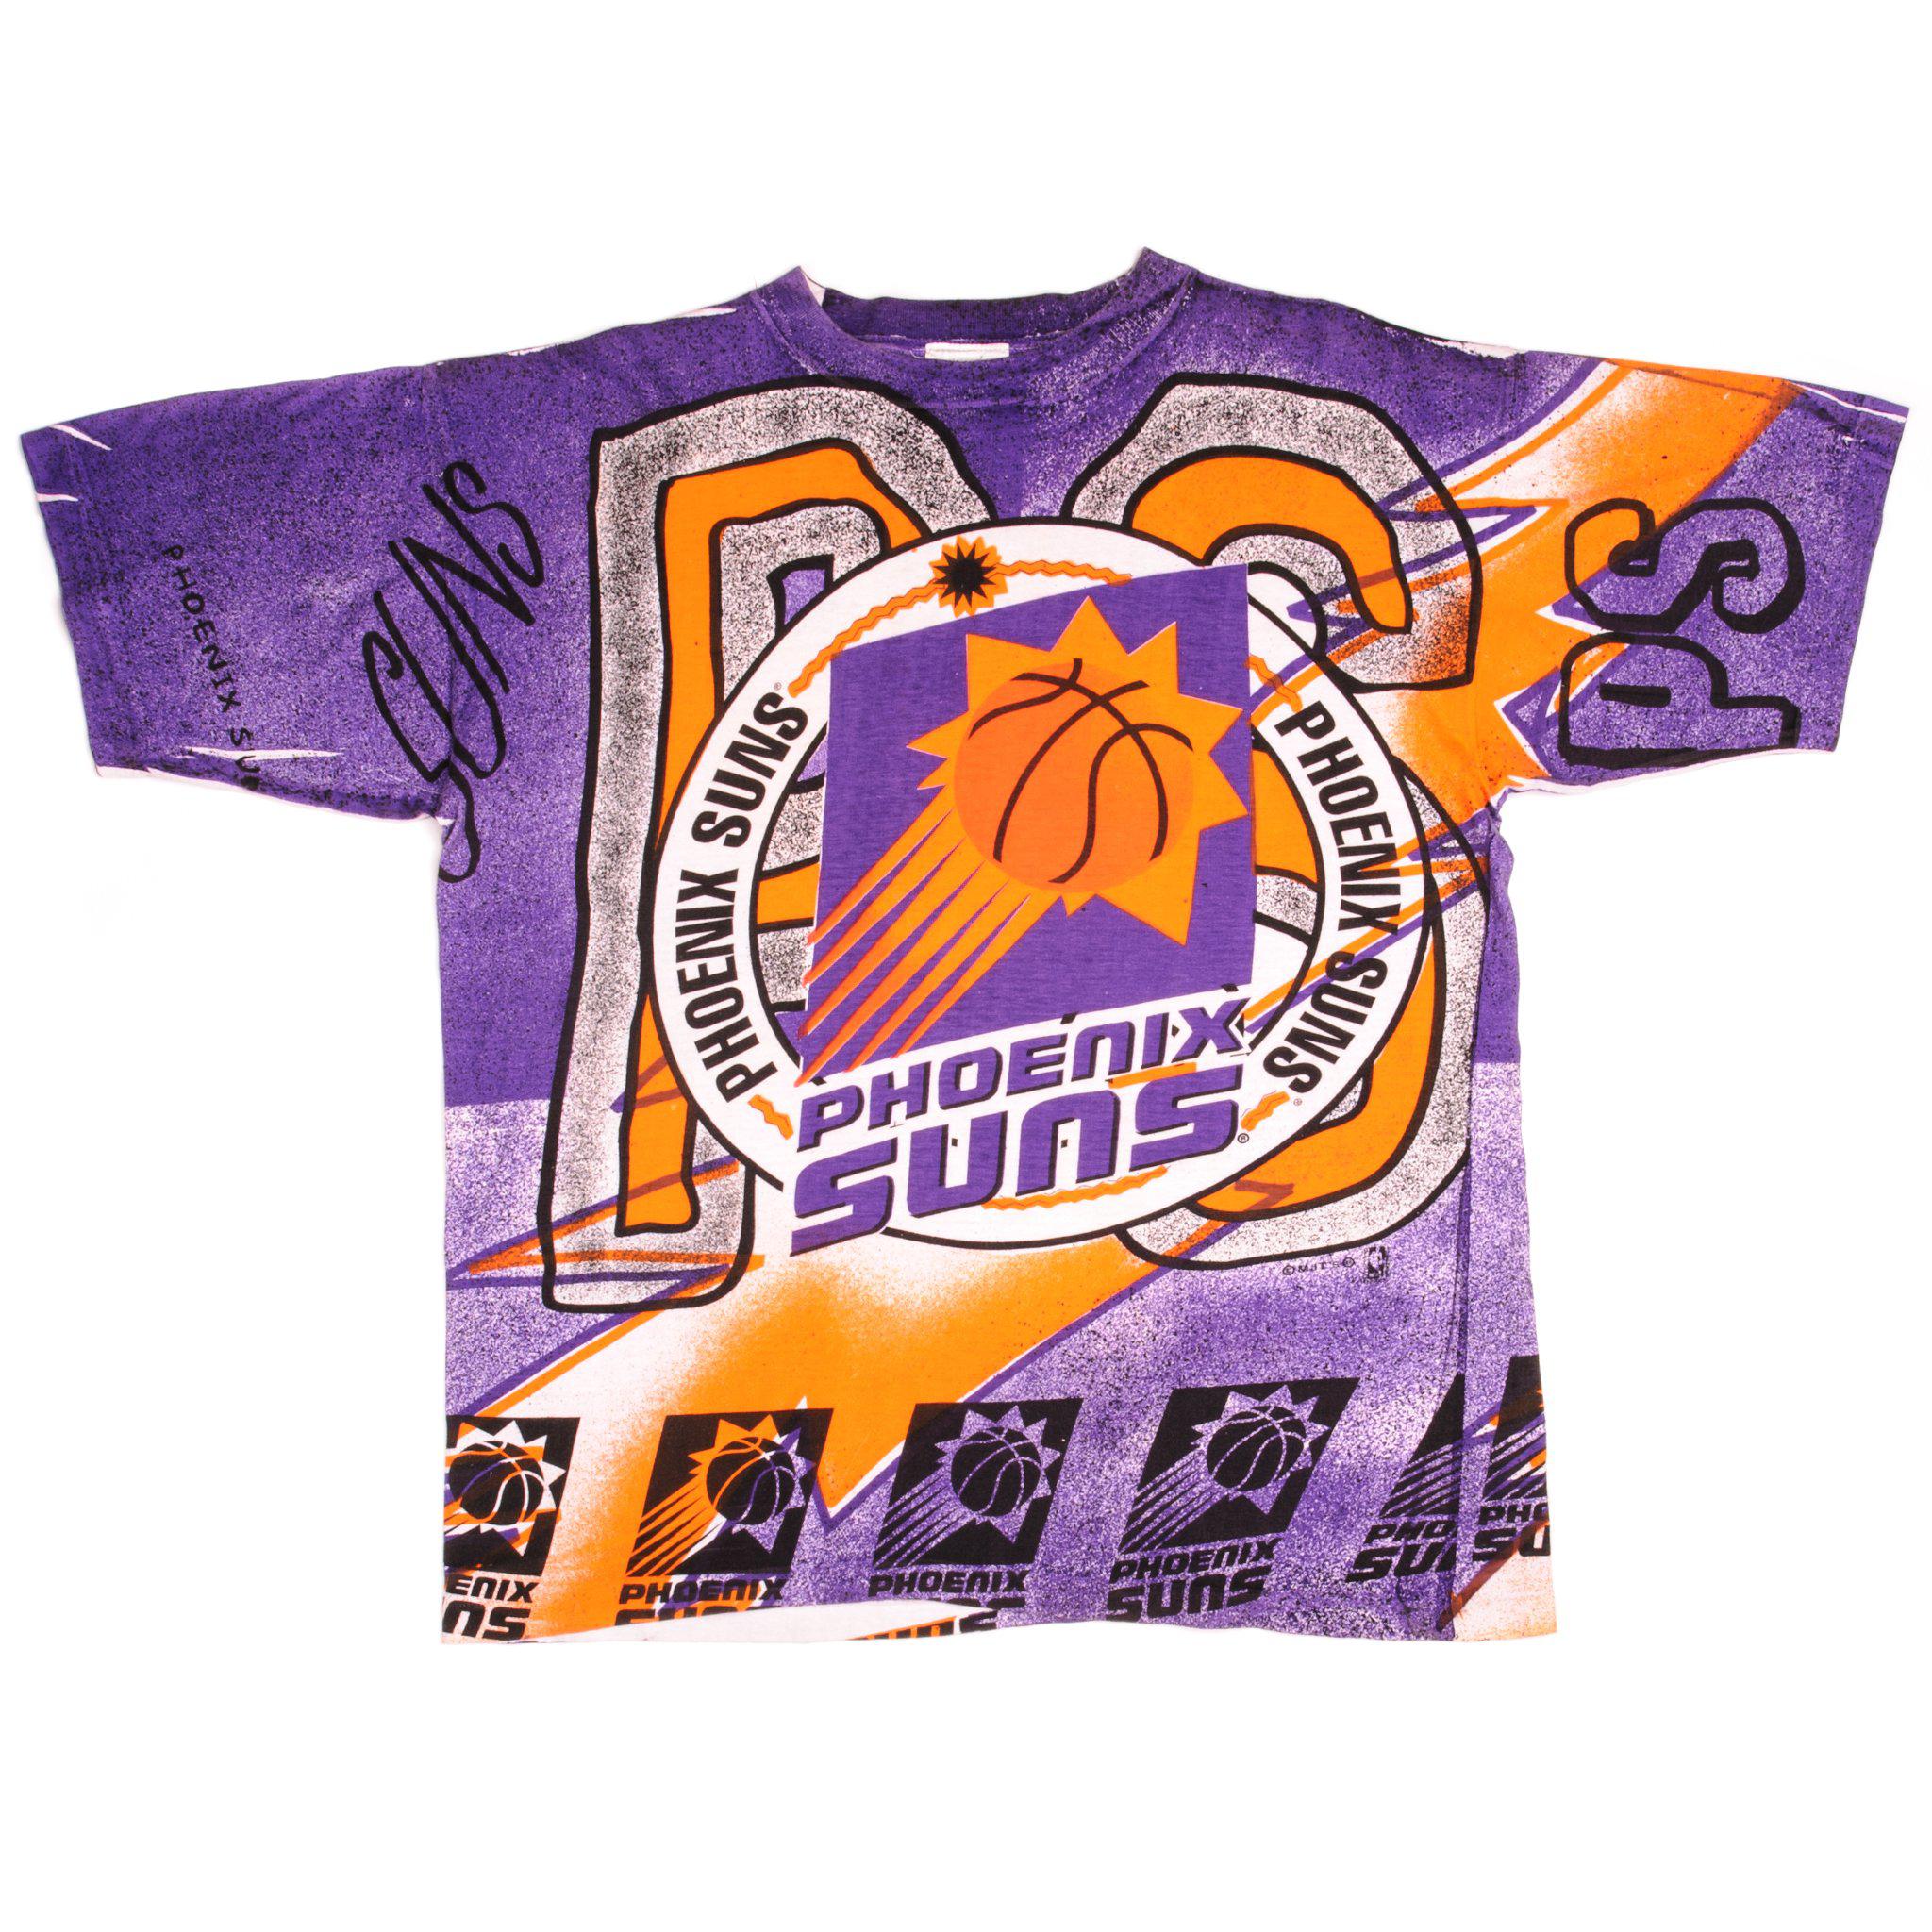 Classic Phoenix Suns T-shirt